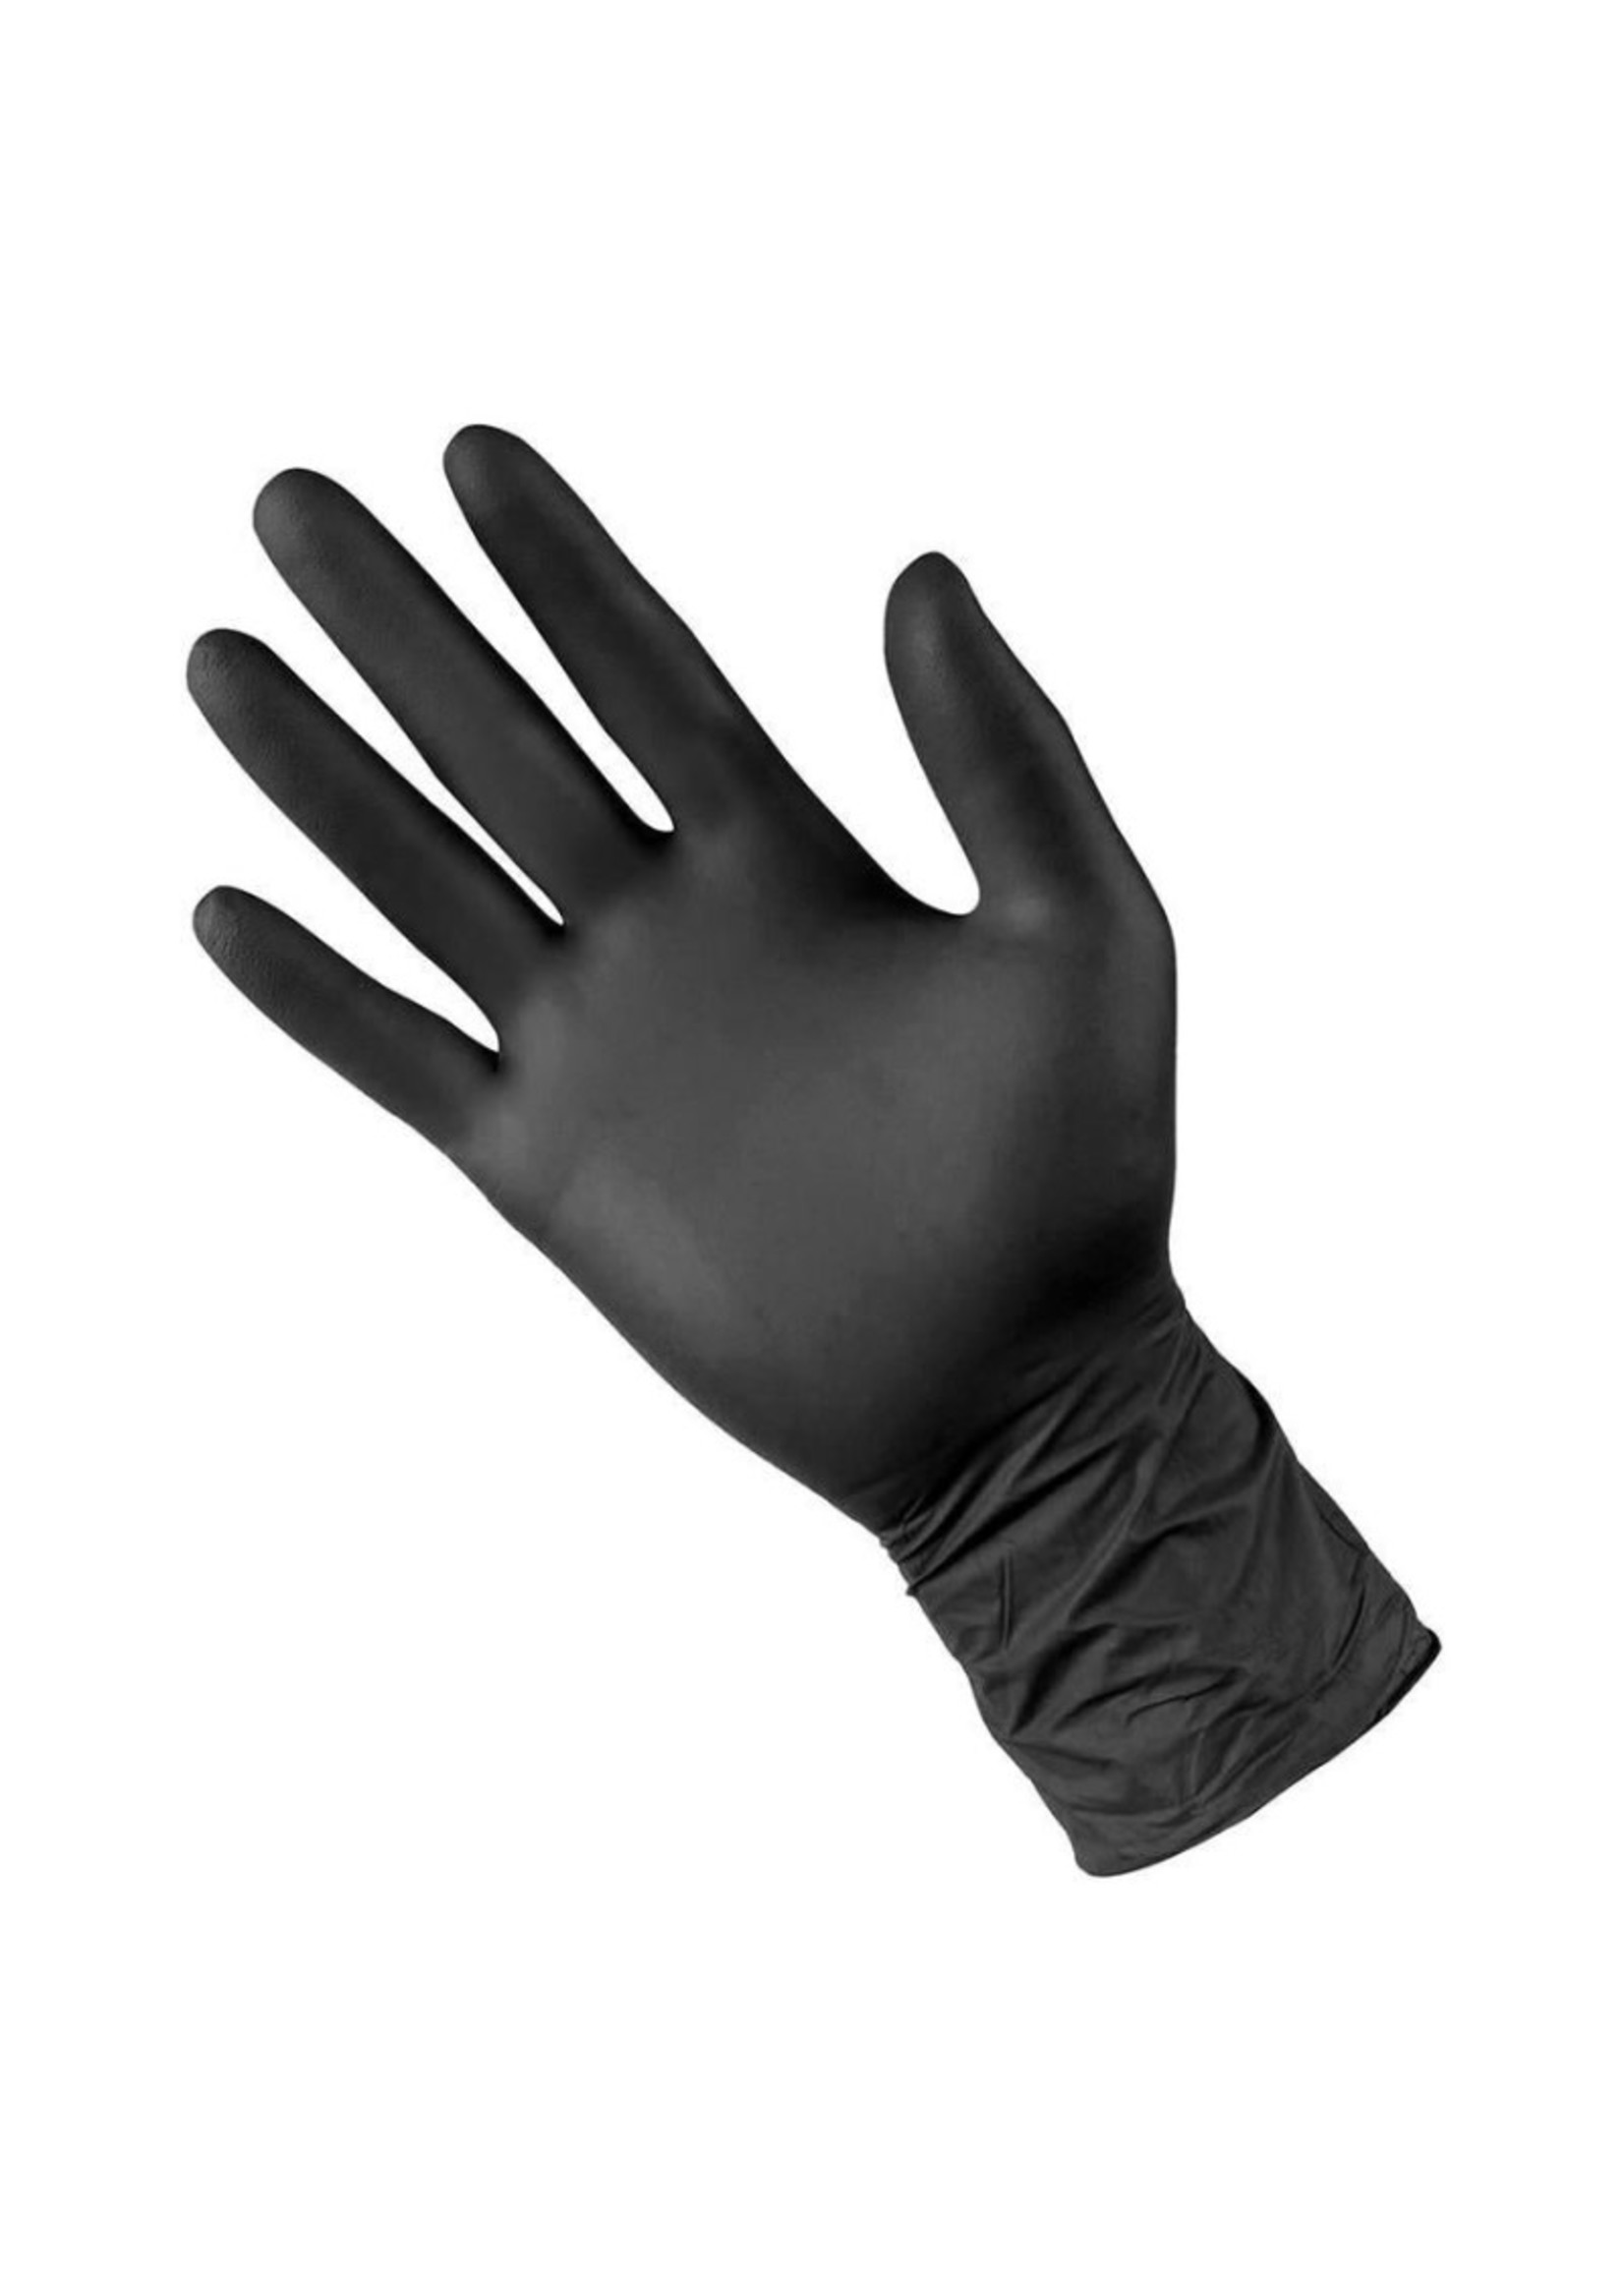 Lilith Salon Latex Gloves - Black - Small - Pair